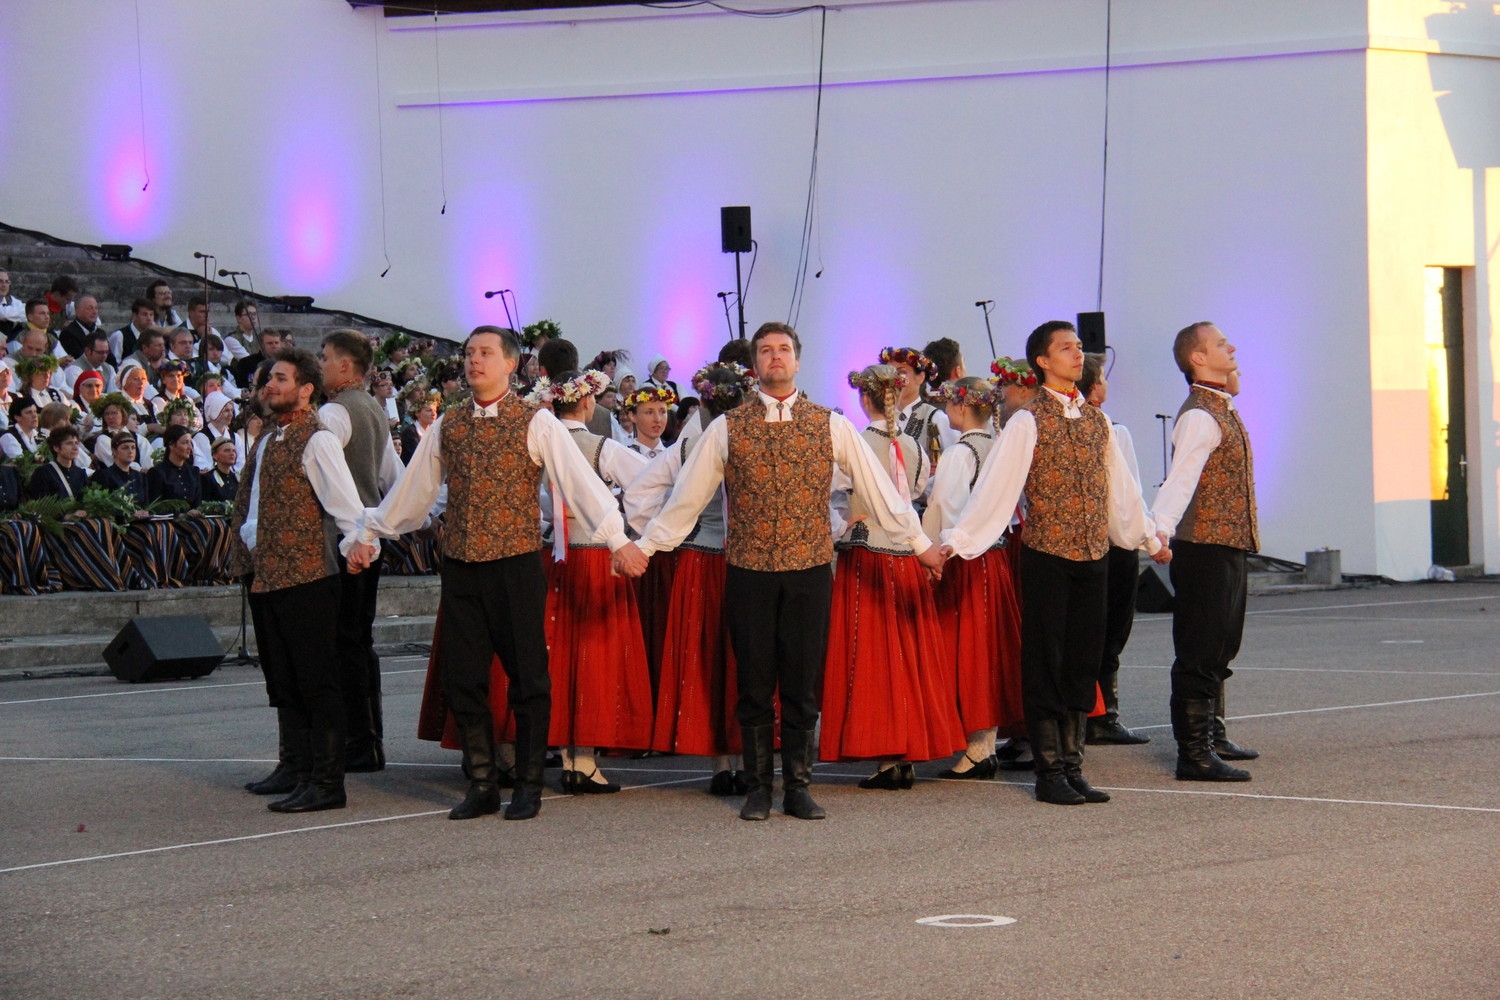 VIII Ziemeļu un Baltijas valstu Dziesmu svētku ieskaņu koncerts Durbes estrādē